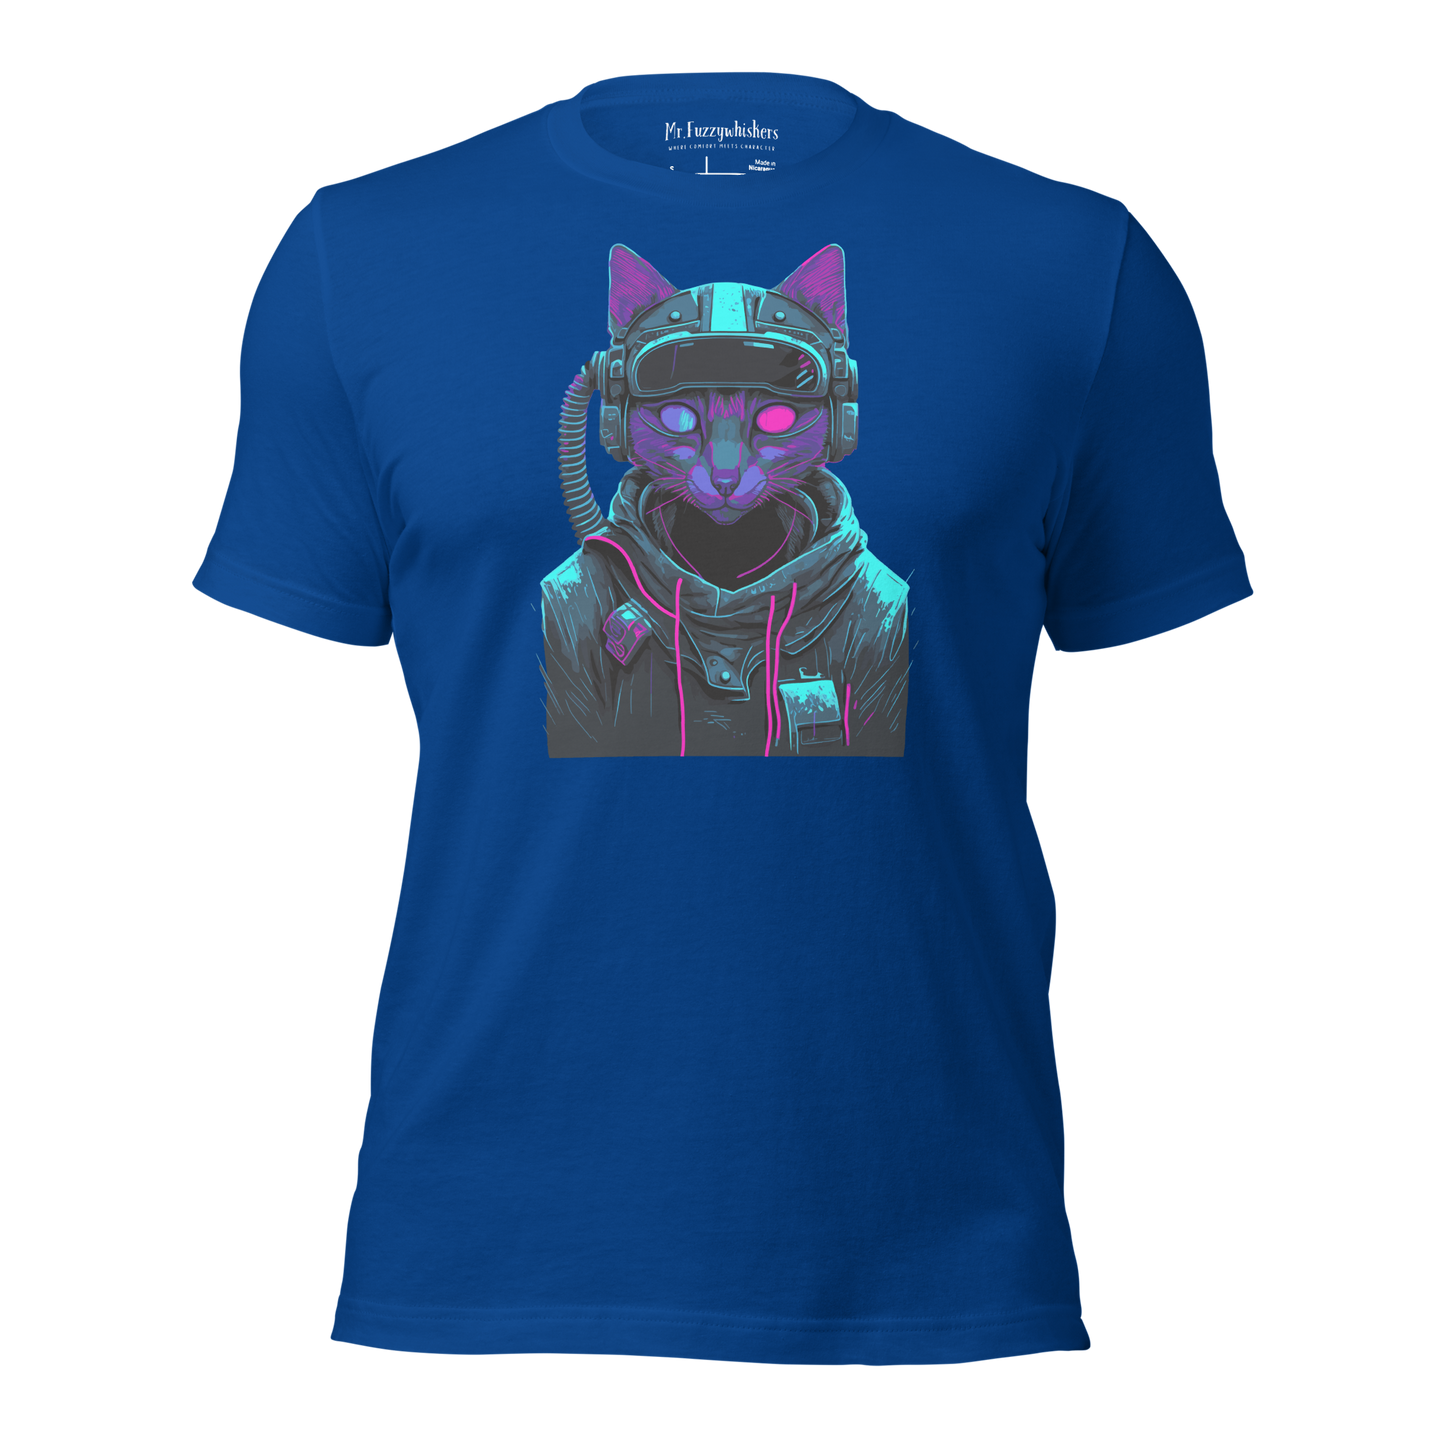 Cosmic Purr-suit: Neon Voyager Cat Unisex T-shirt